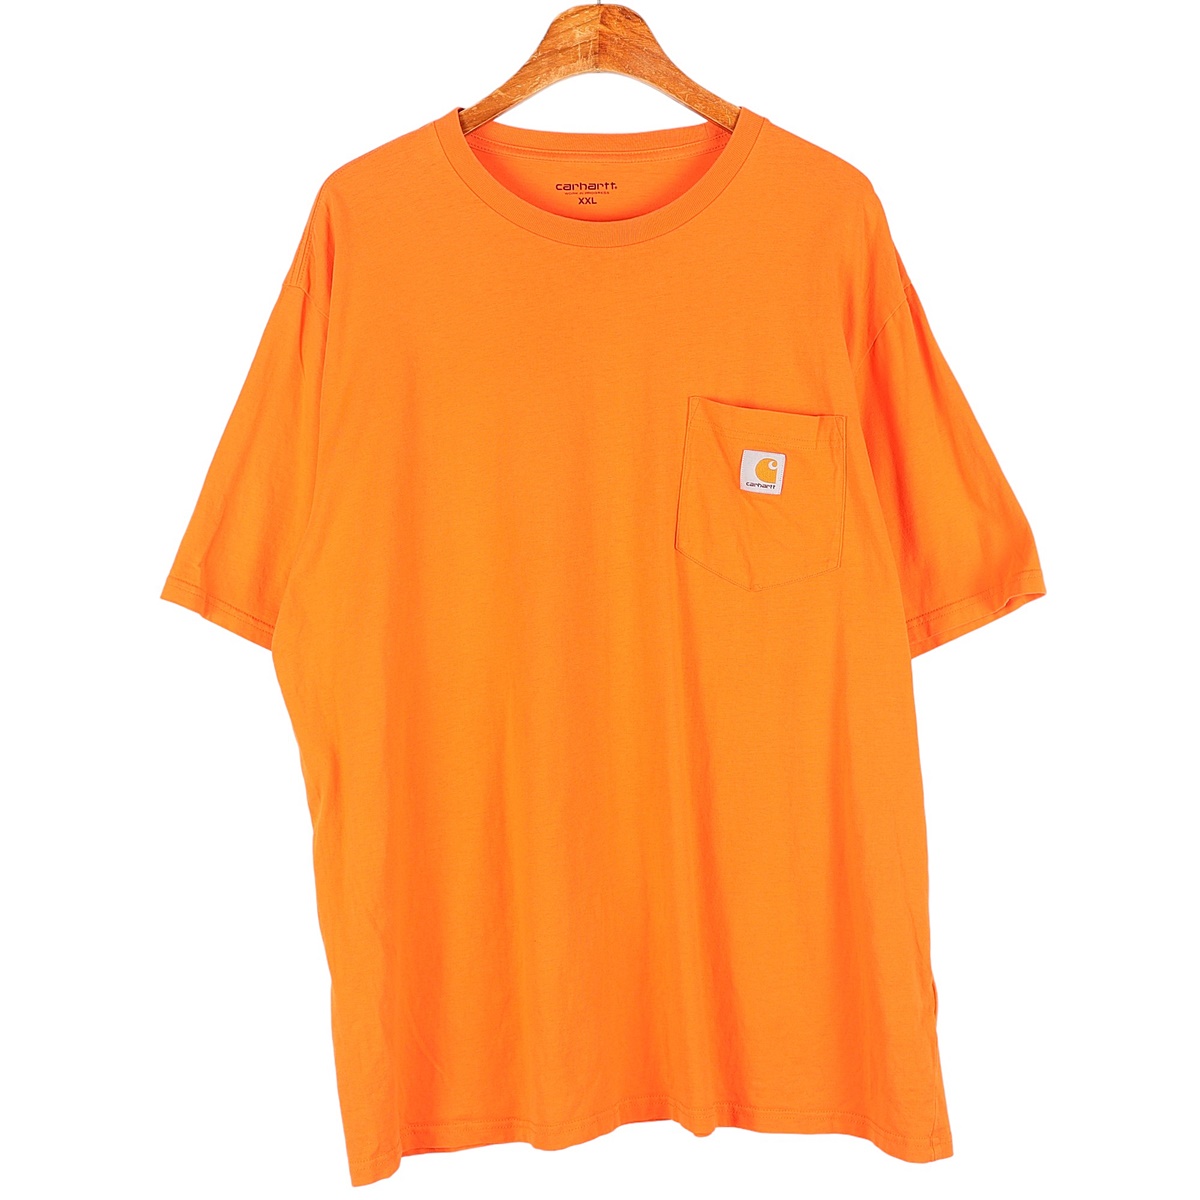 칼하트(CARHARTT) 오렌지 반팔 티셔츠 / 2XL